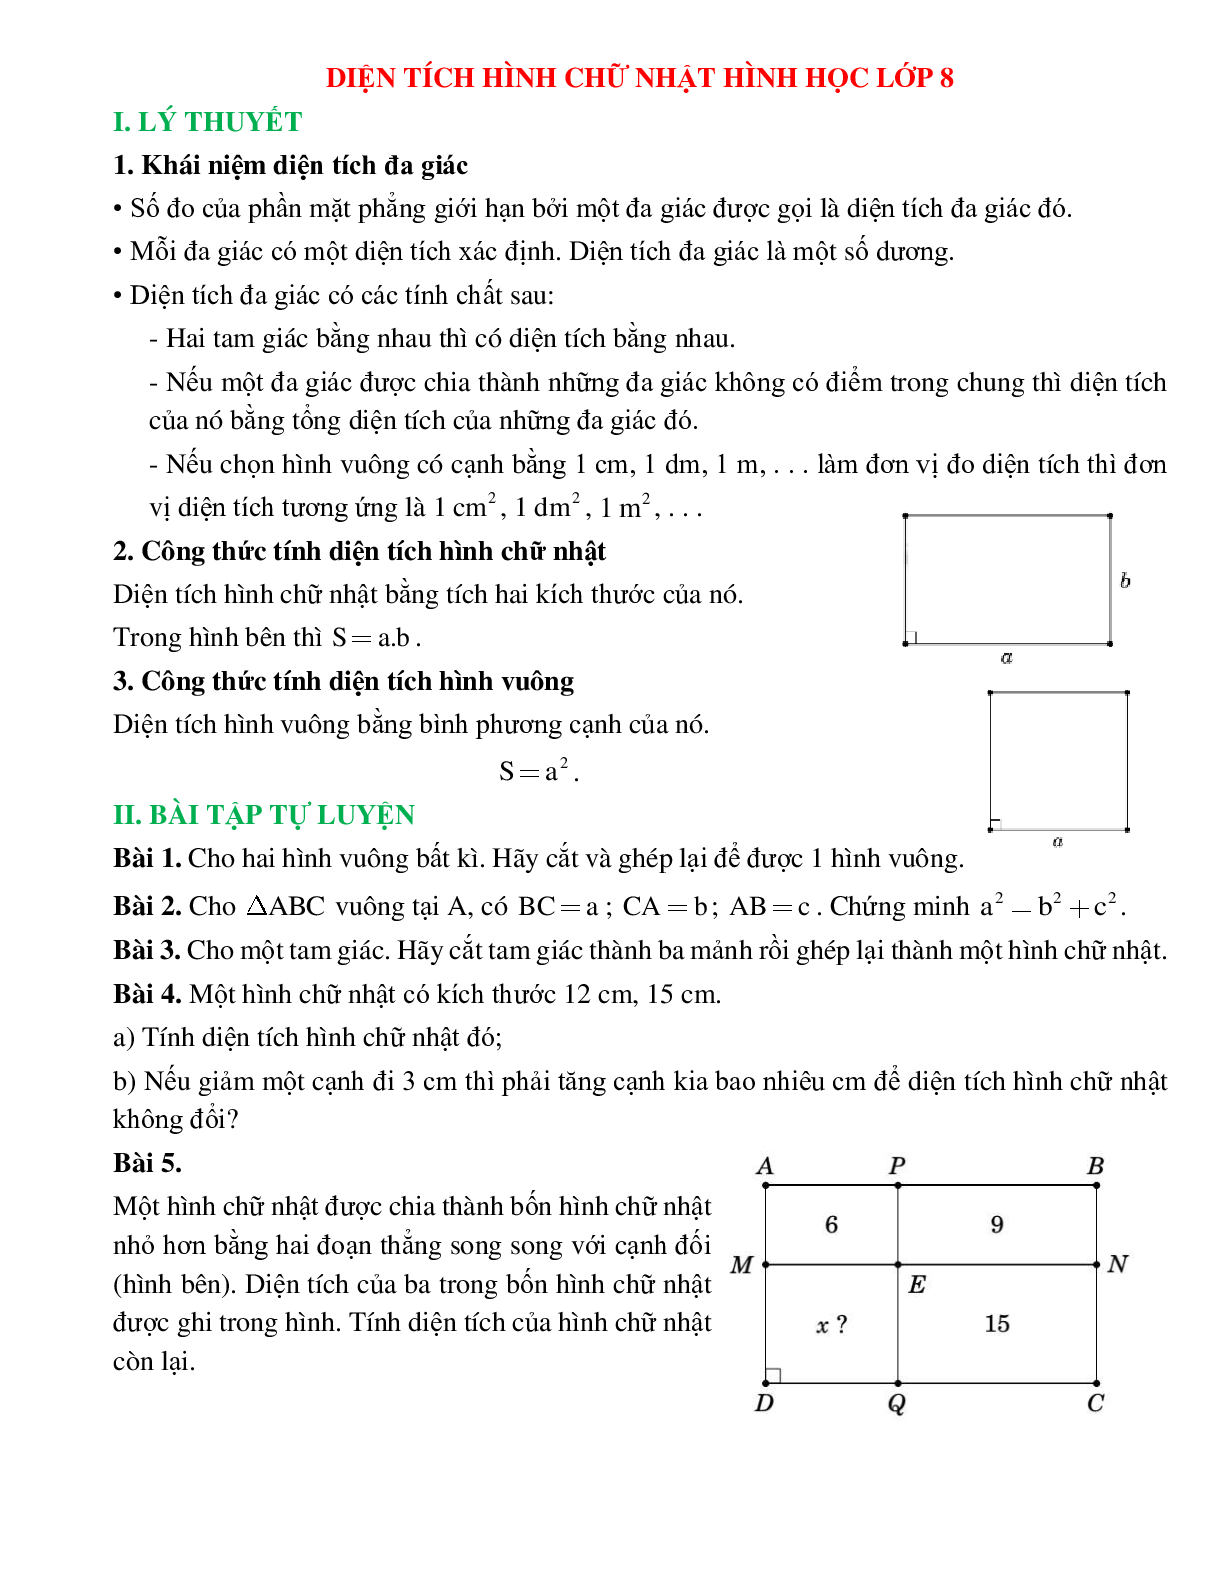 Diện tích hình chữ nhật hình học lớp 8 (trang 1)